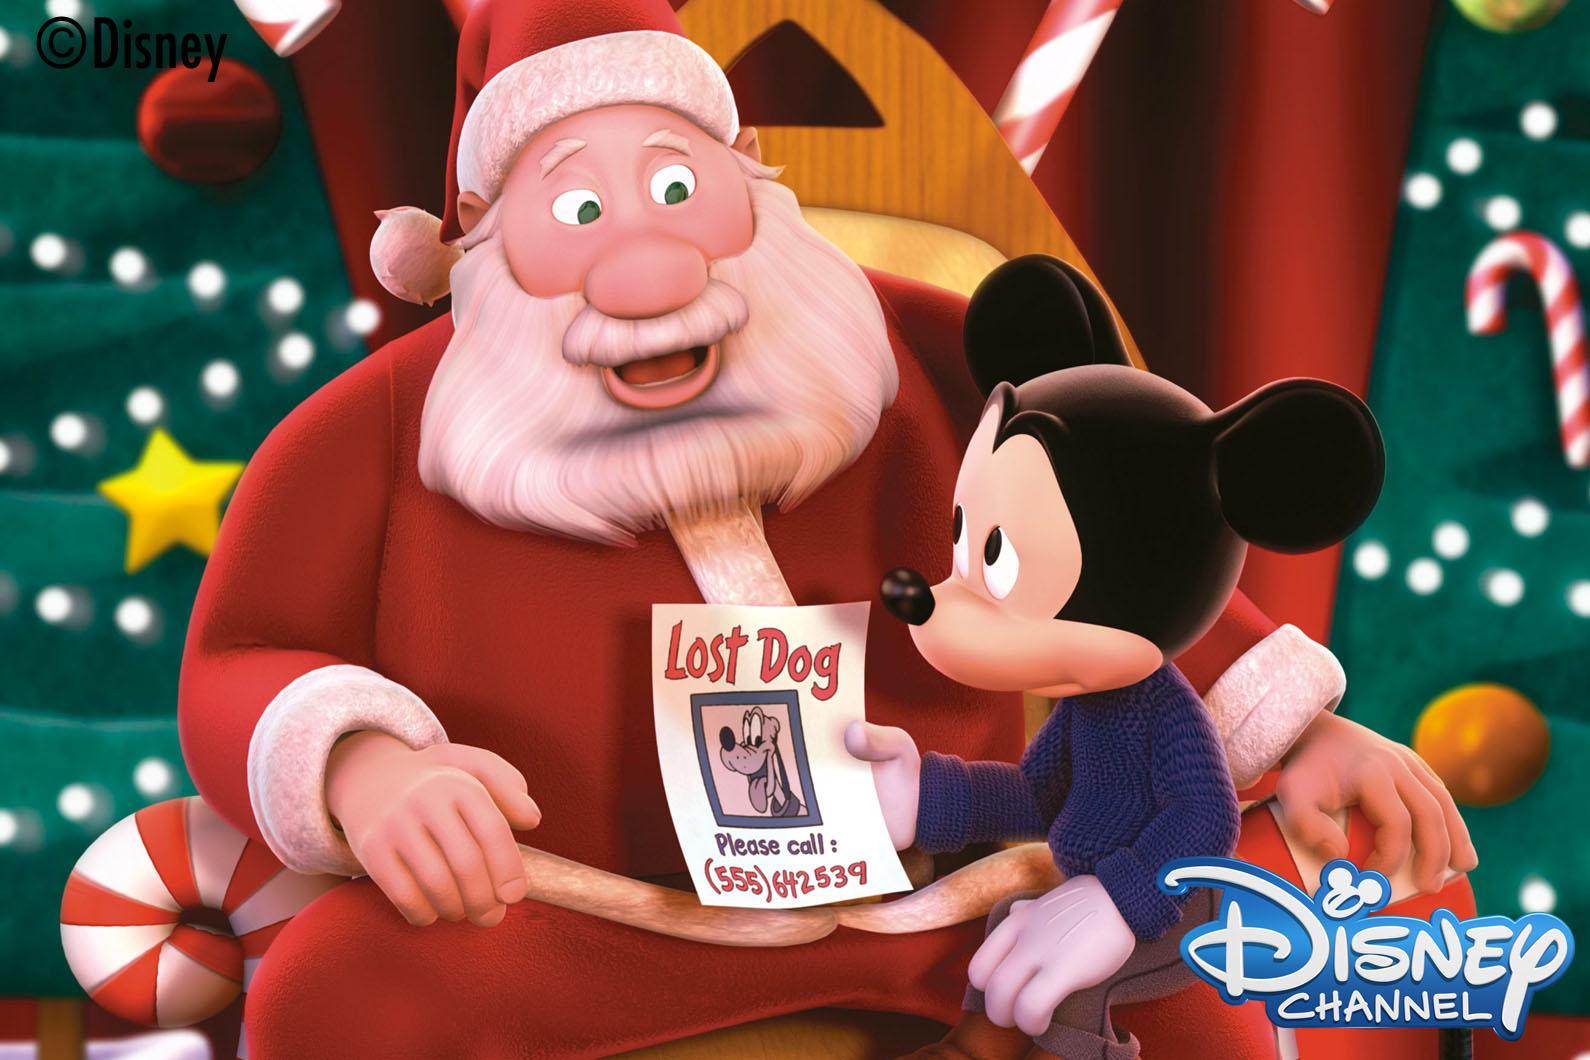 ディズニー チャンネル公式 En Twitter 明日12月21日 日 は あさ7 30からクリスマス映画を連続放送 14 45 ポップアップ ミッキー すてきなクリスマス など 心あたたまるクリスマス作品をたっぷりお楽しみください Http T Co Sux9cnk9x9